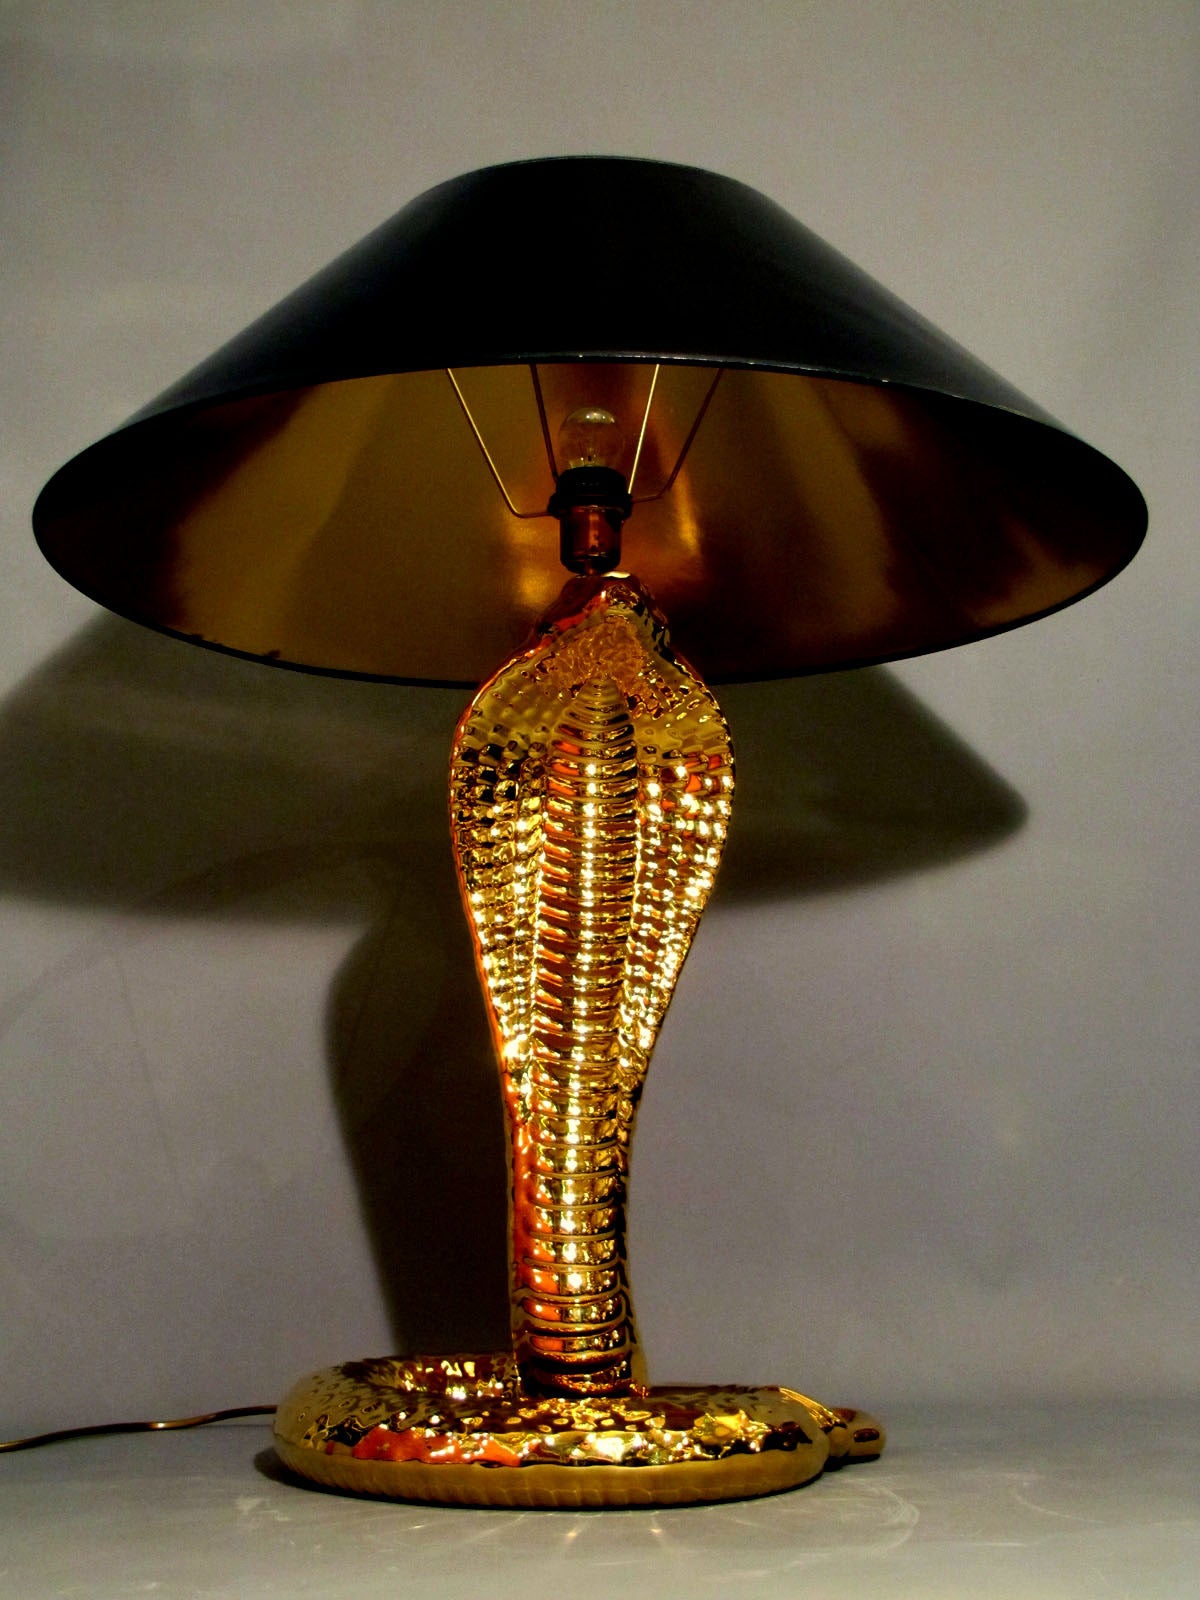 Lampe de table unique en céramique dorée en forme de cobra. Un beau travail signé par Tommaso Barbi, période 1970. En état absolument parfait avec l'abat-jour original.
La hauteur sans abat-jour est de 63 cm.